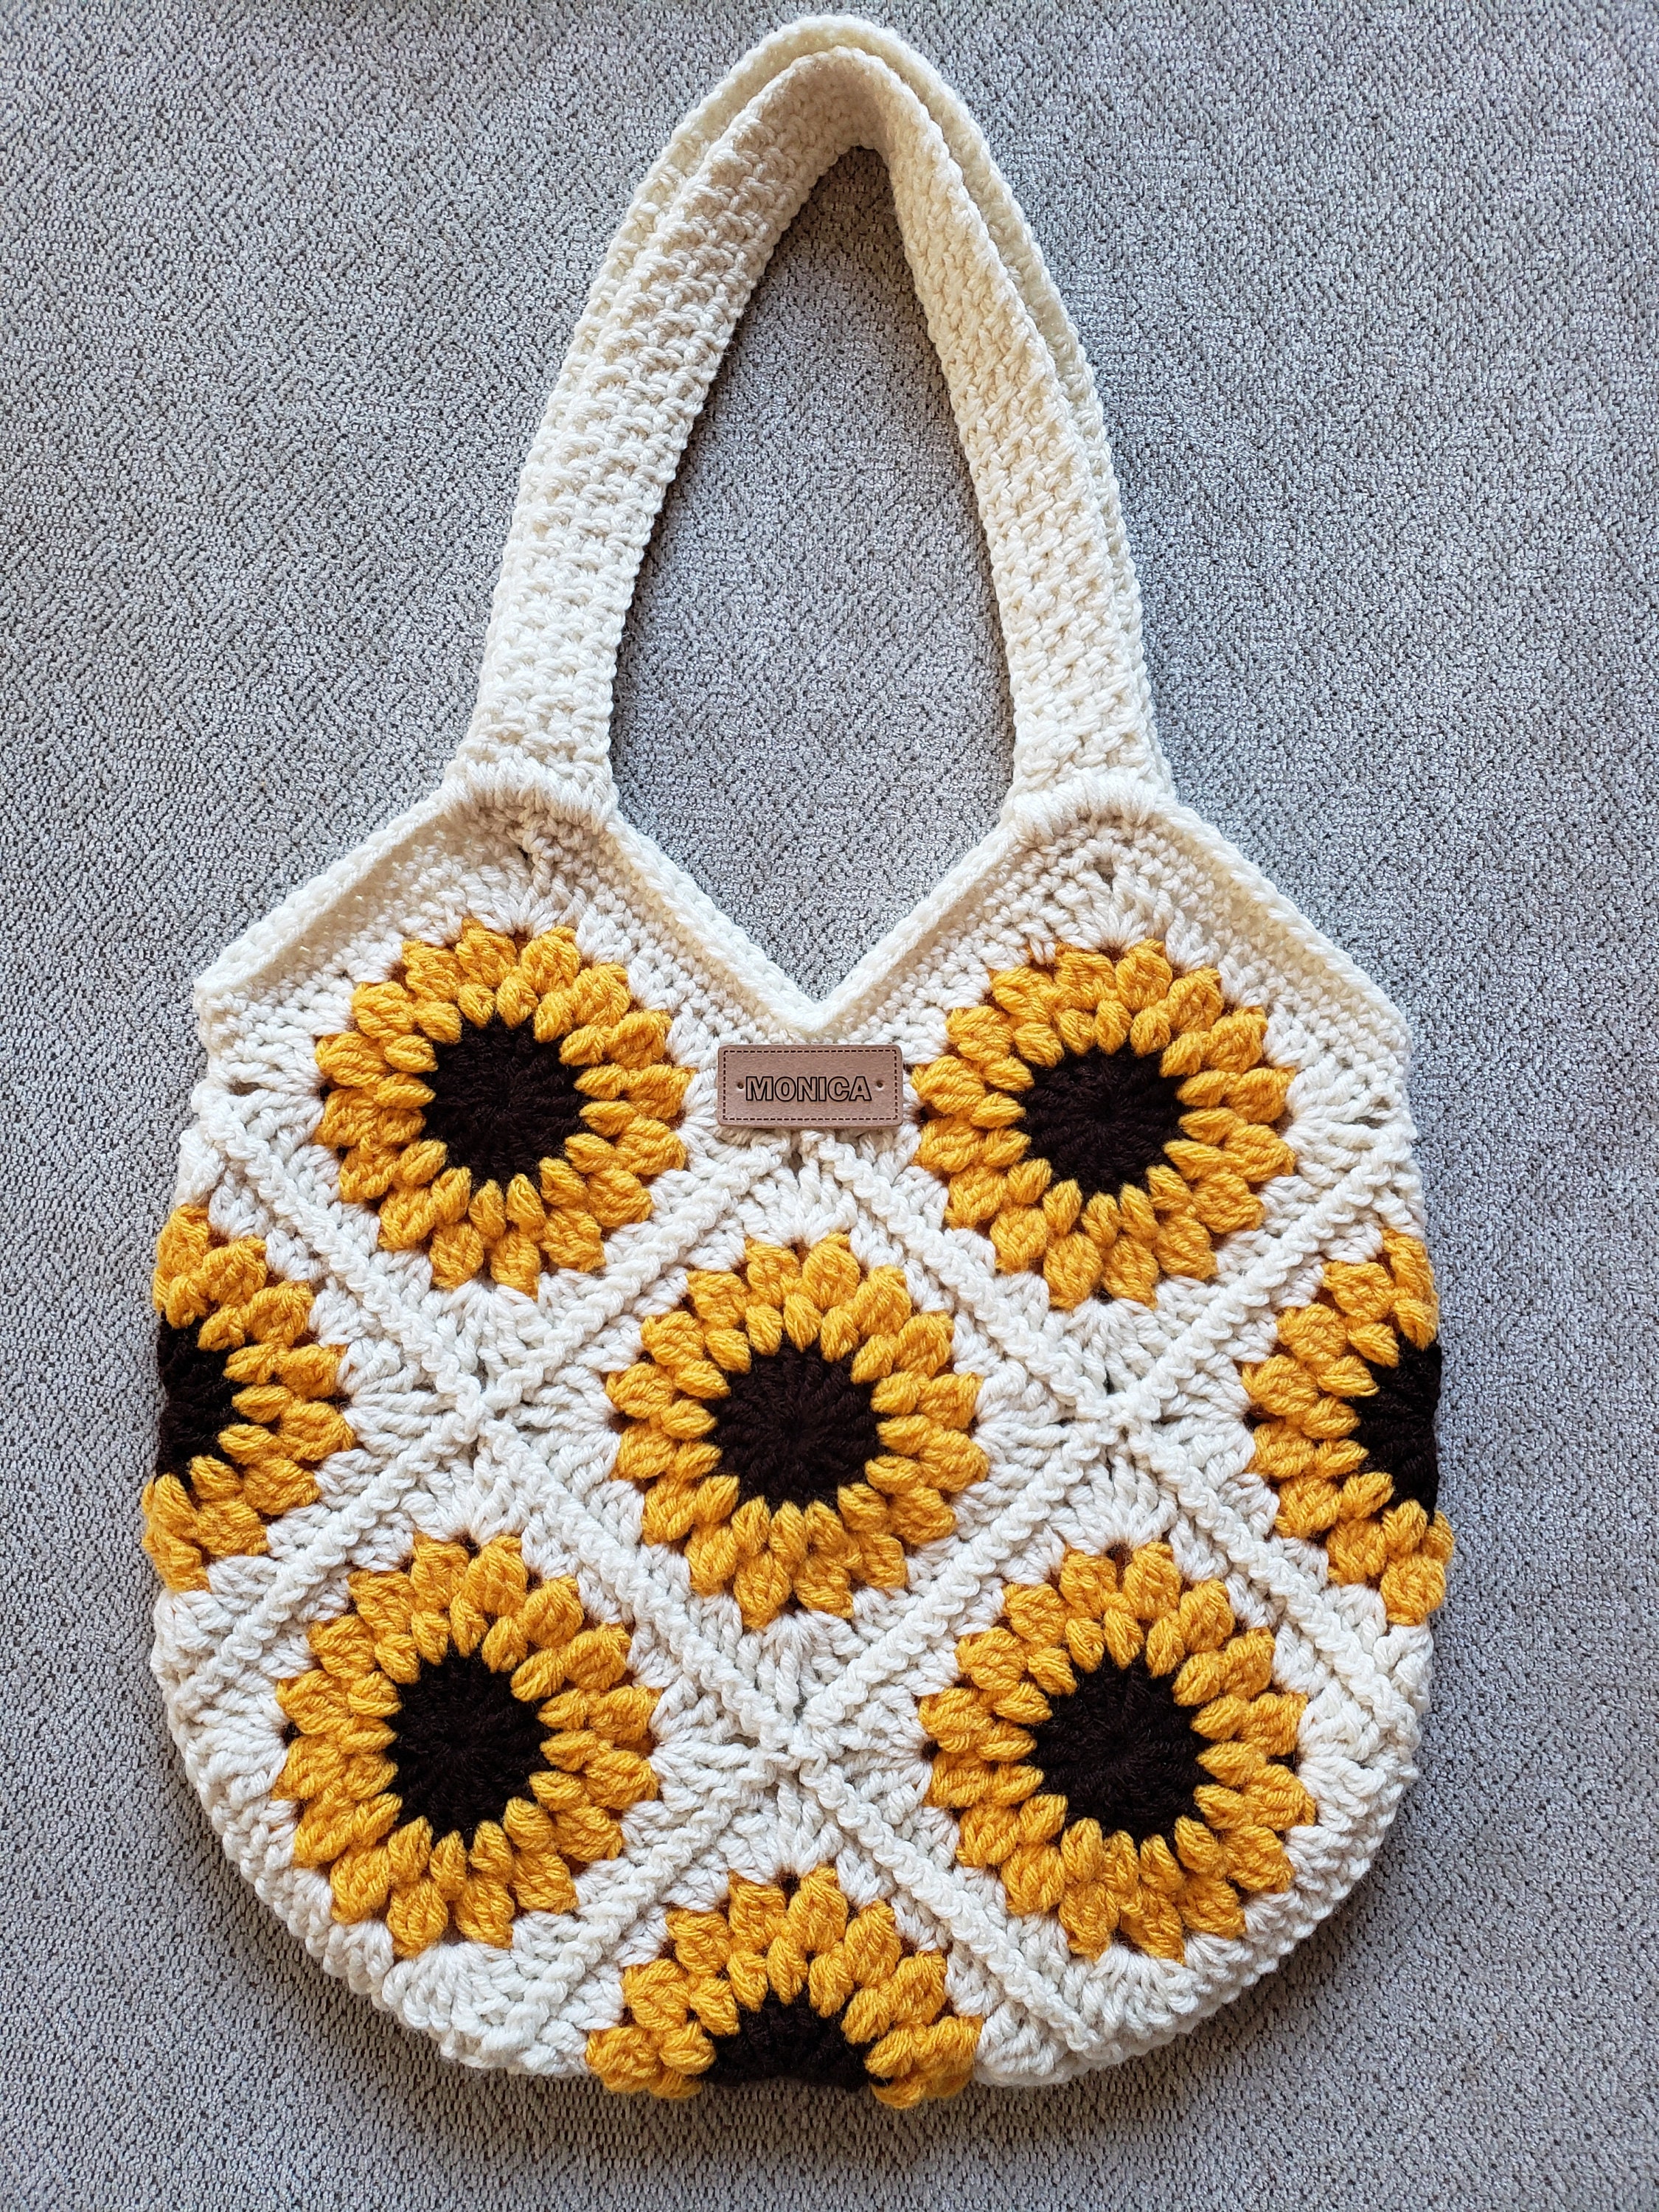 Raccoon Plastic Bag Holder, Crochet Home Decor, Walmart Bag Holder by  Charlene, Gift for Mom, MADE TO ORDER 